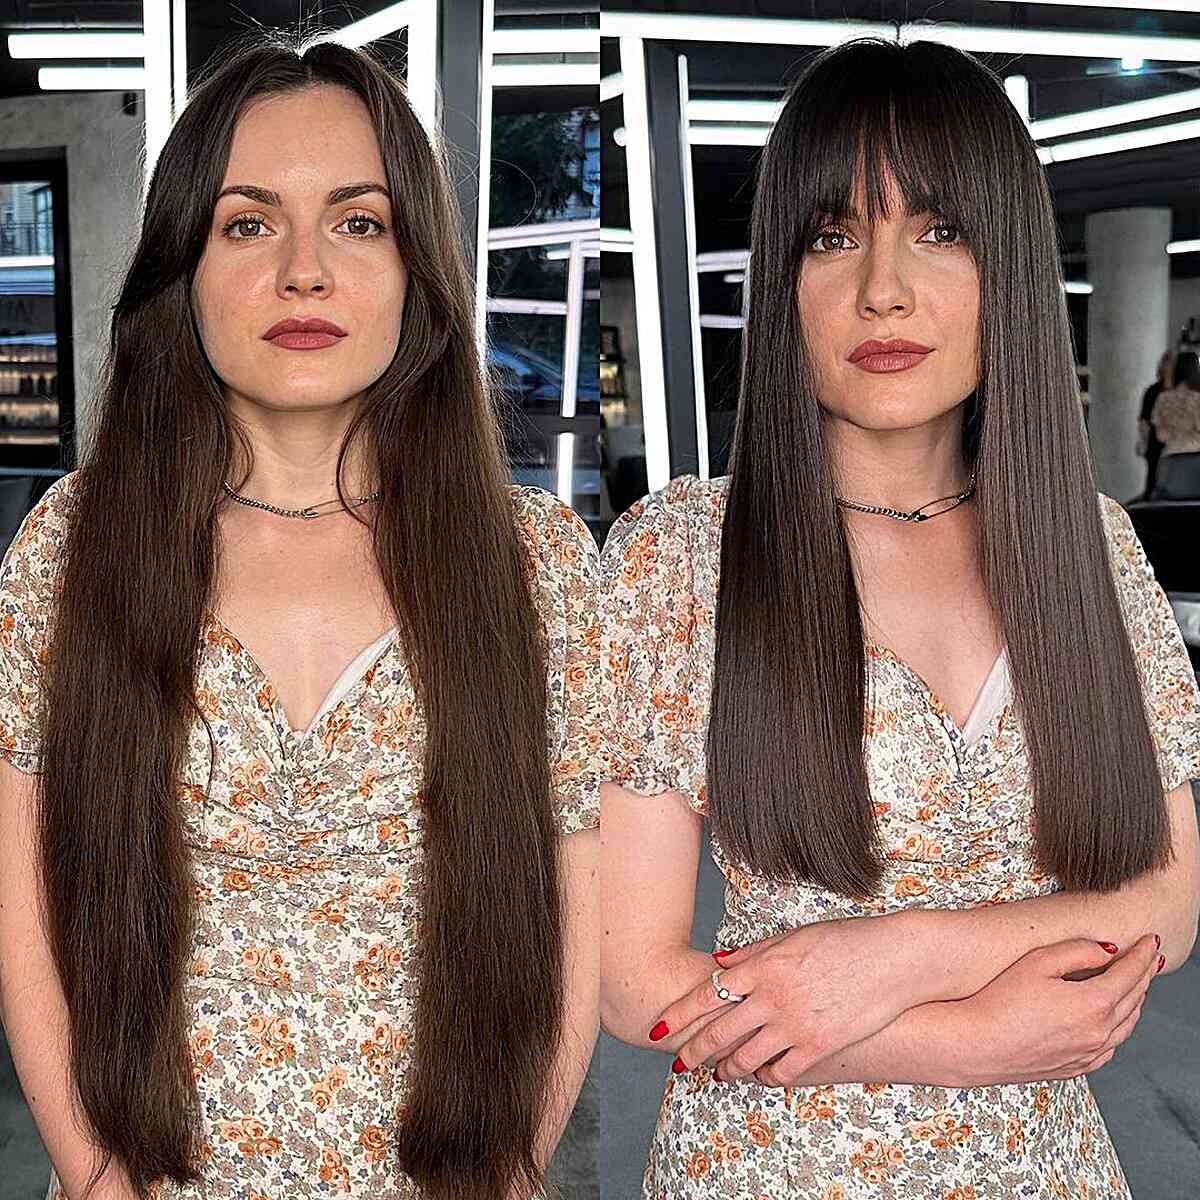 Face-Framing Fringe on Sleek Long Hair for Square Faces